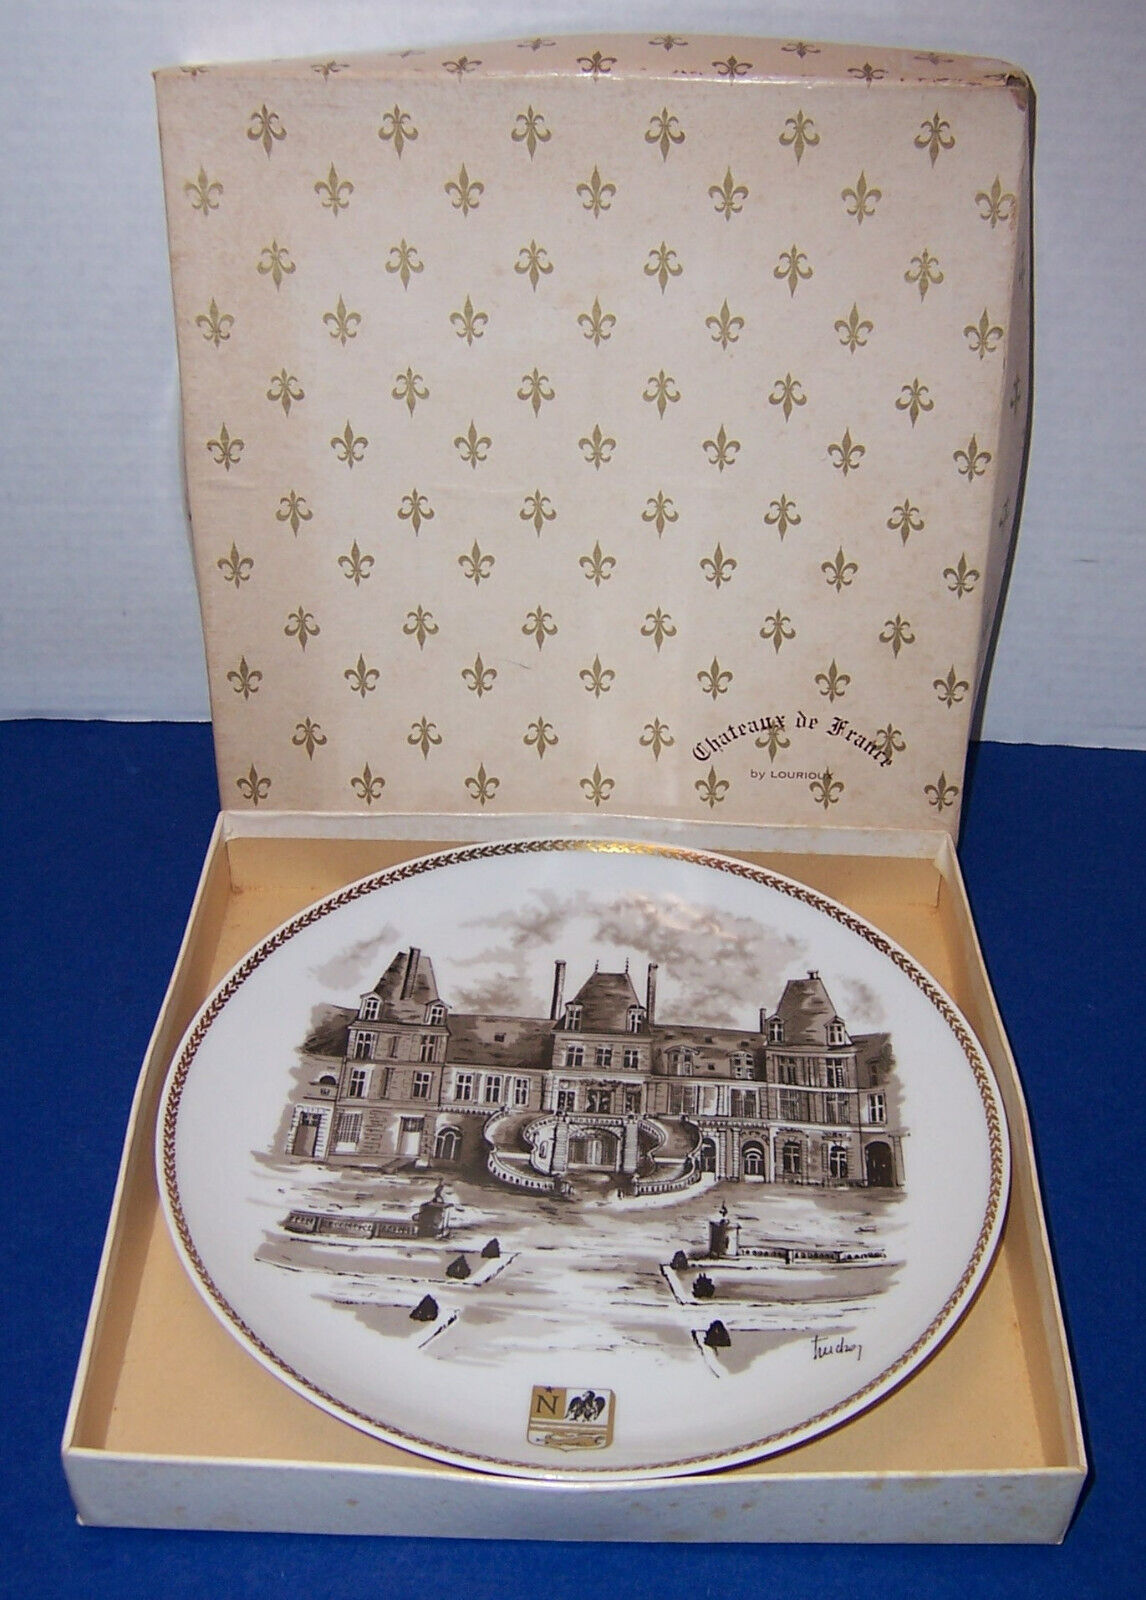 Fontainebleau 1971 Chateaux de France by Louis Lourioux Limited Ed. Plate w/ Box